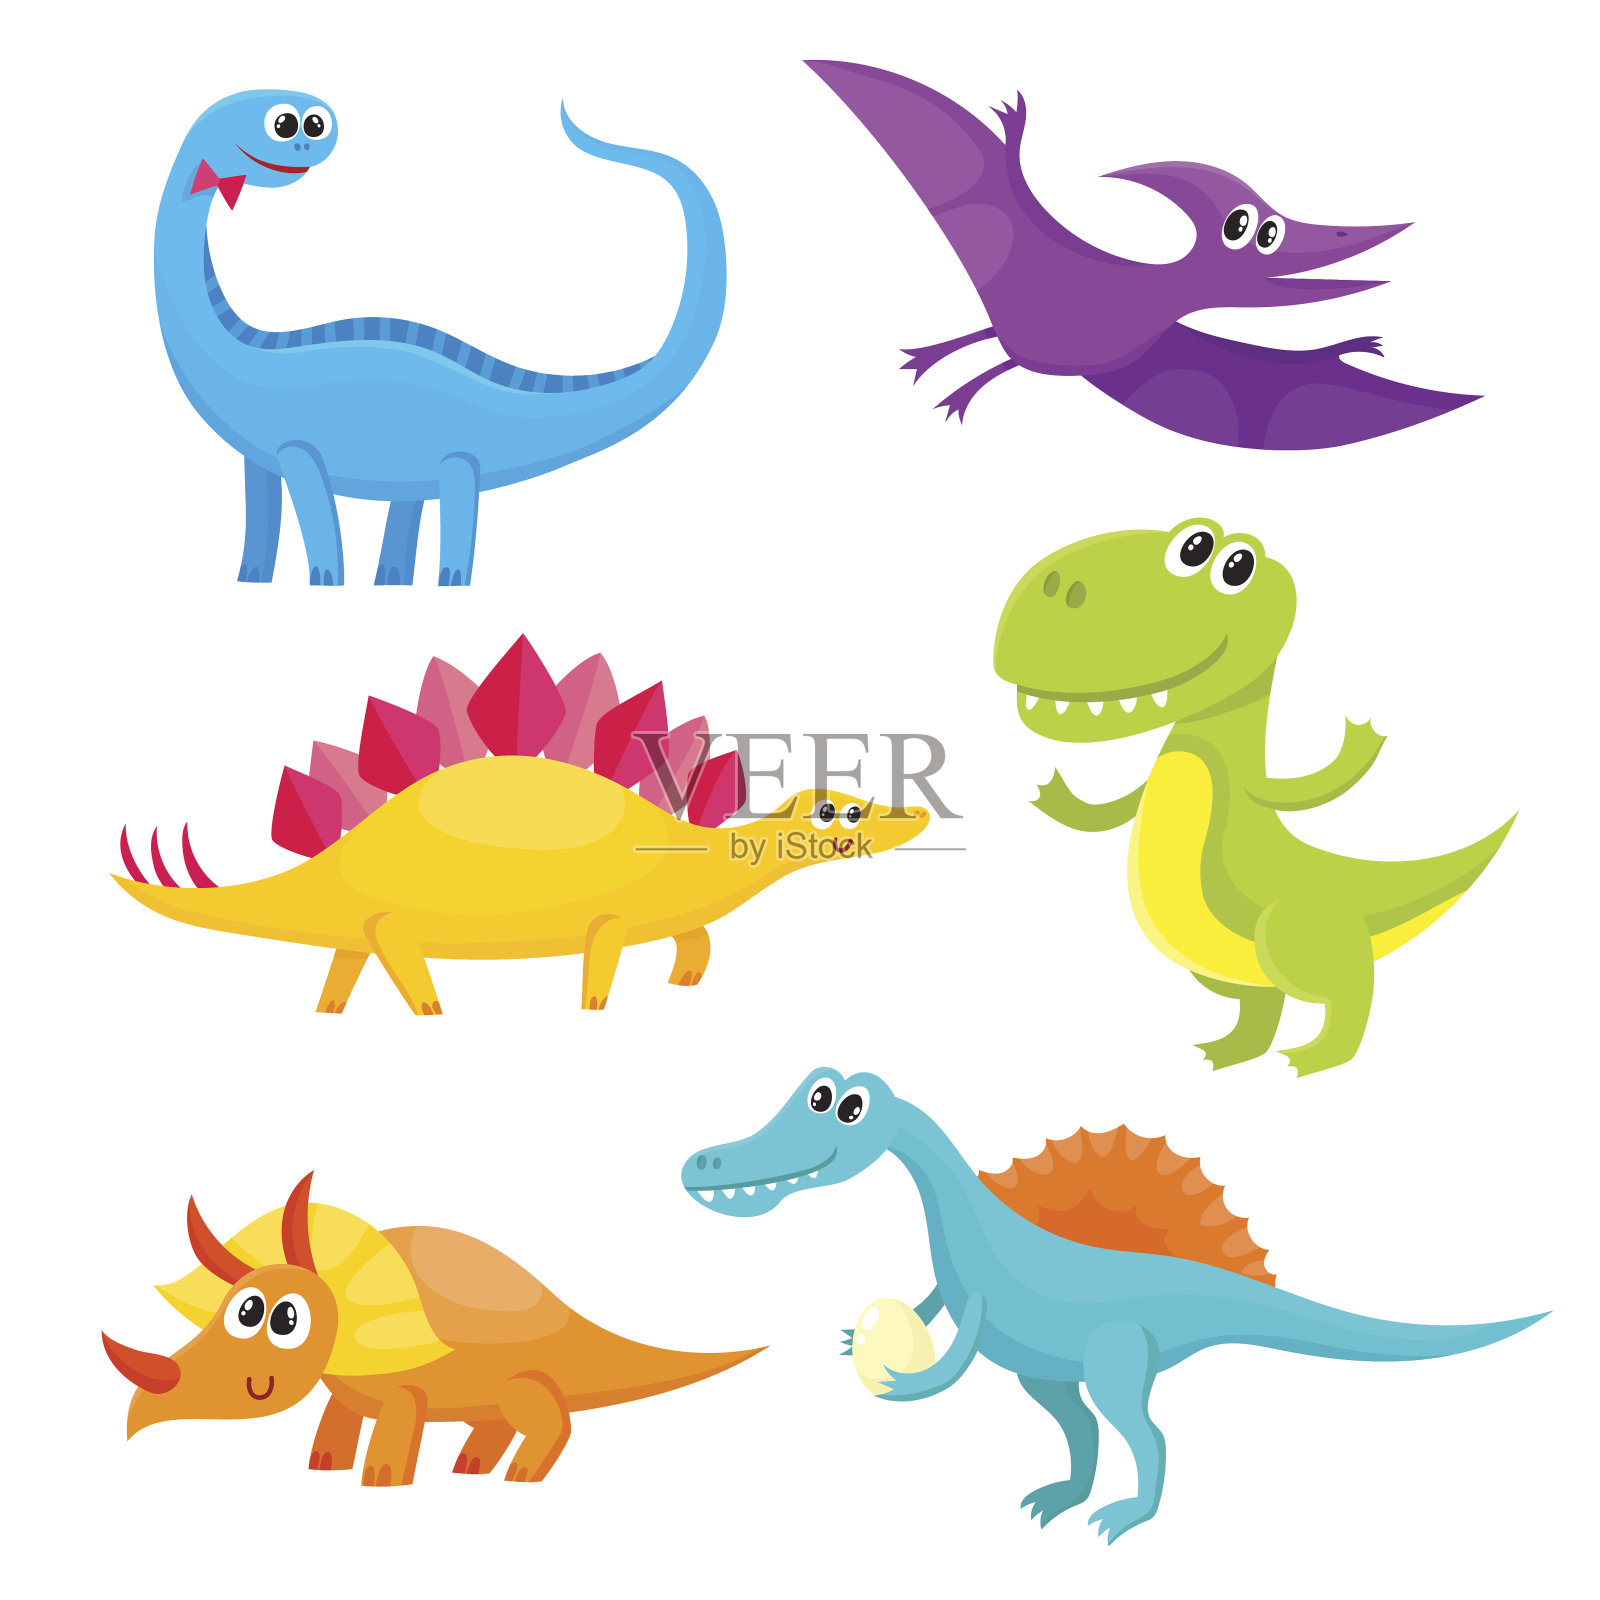 卡通风格的可爱和有趣的微笑的小恐龙设计元素图片